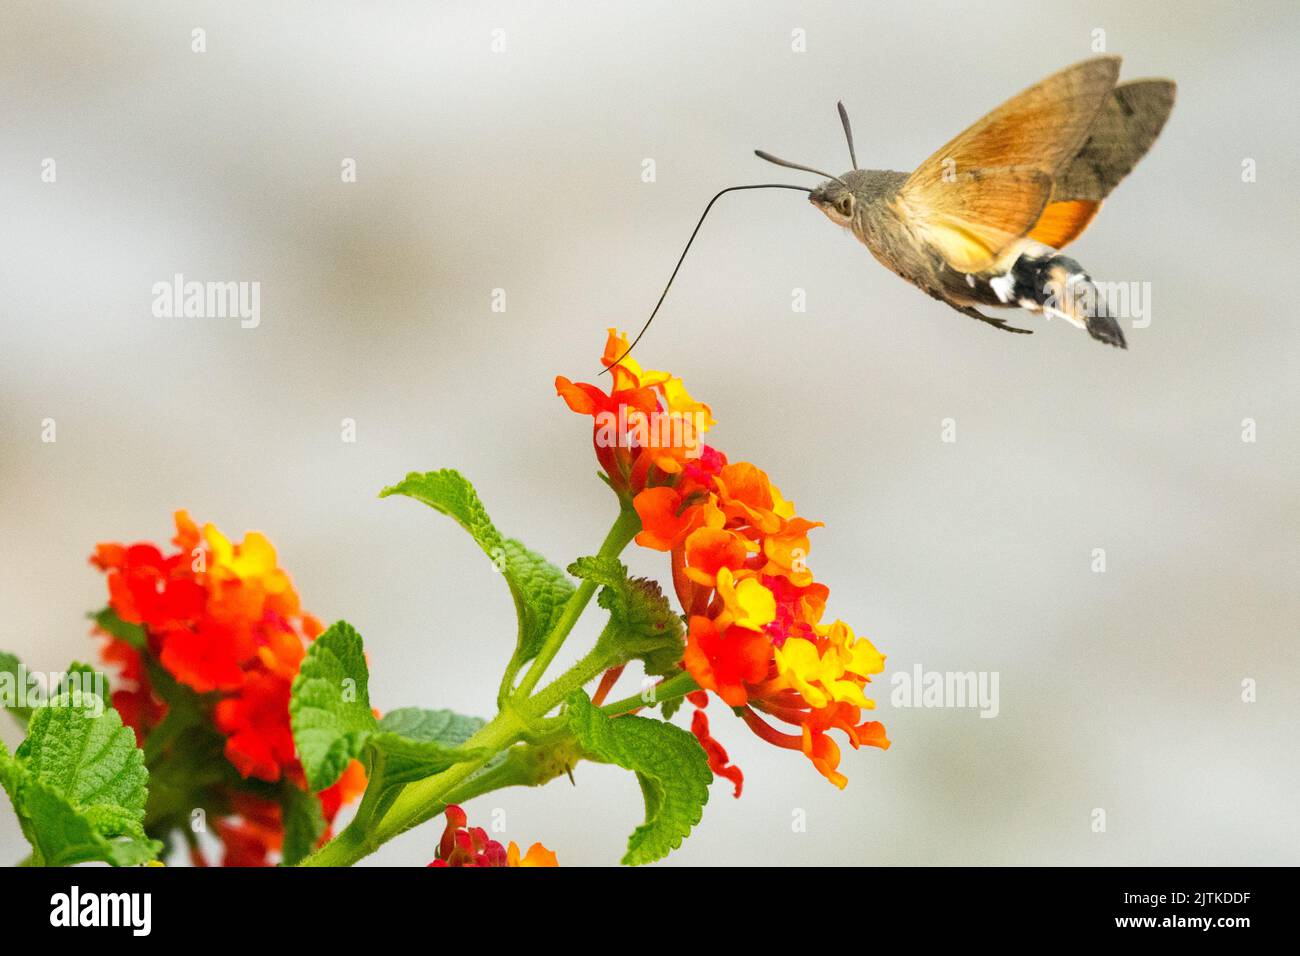 Motte, die über der spanischen Flagge fliegt, Lantana Camara, Kolibris Habicht Motte Blume, Macroglossum stellatarum, lange Proboscis Nectaring blüht Stockfoto